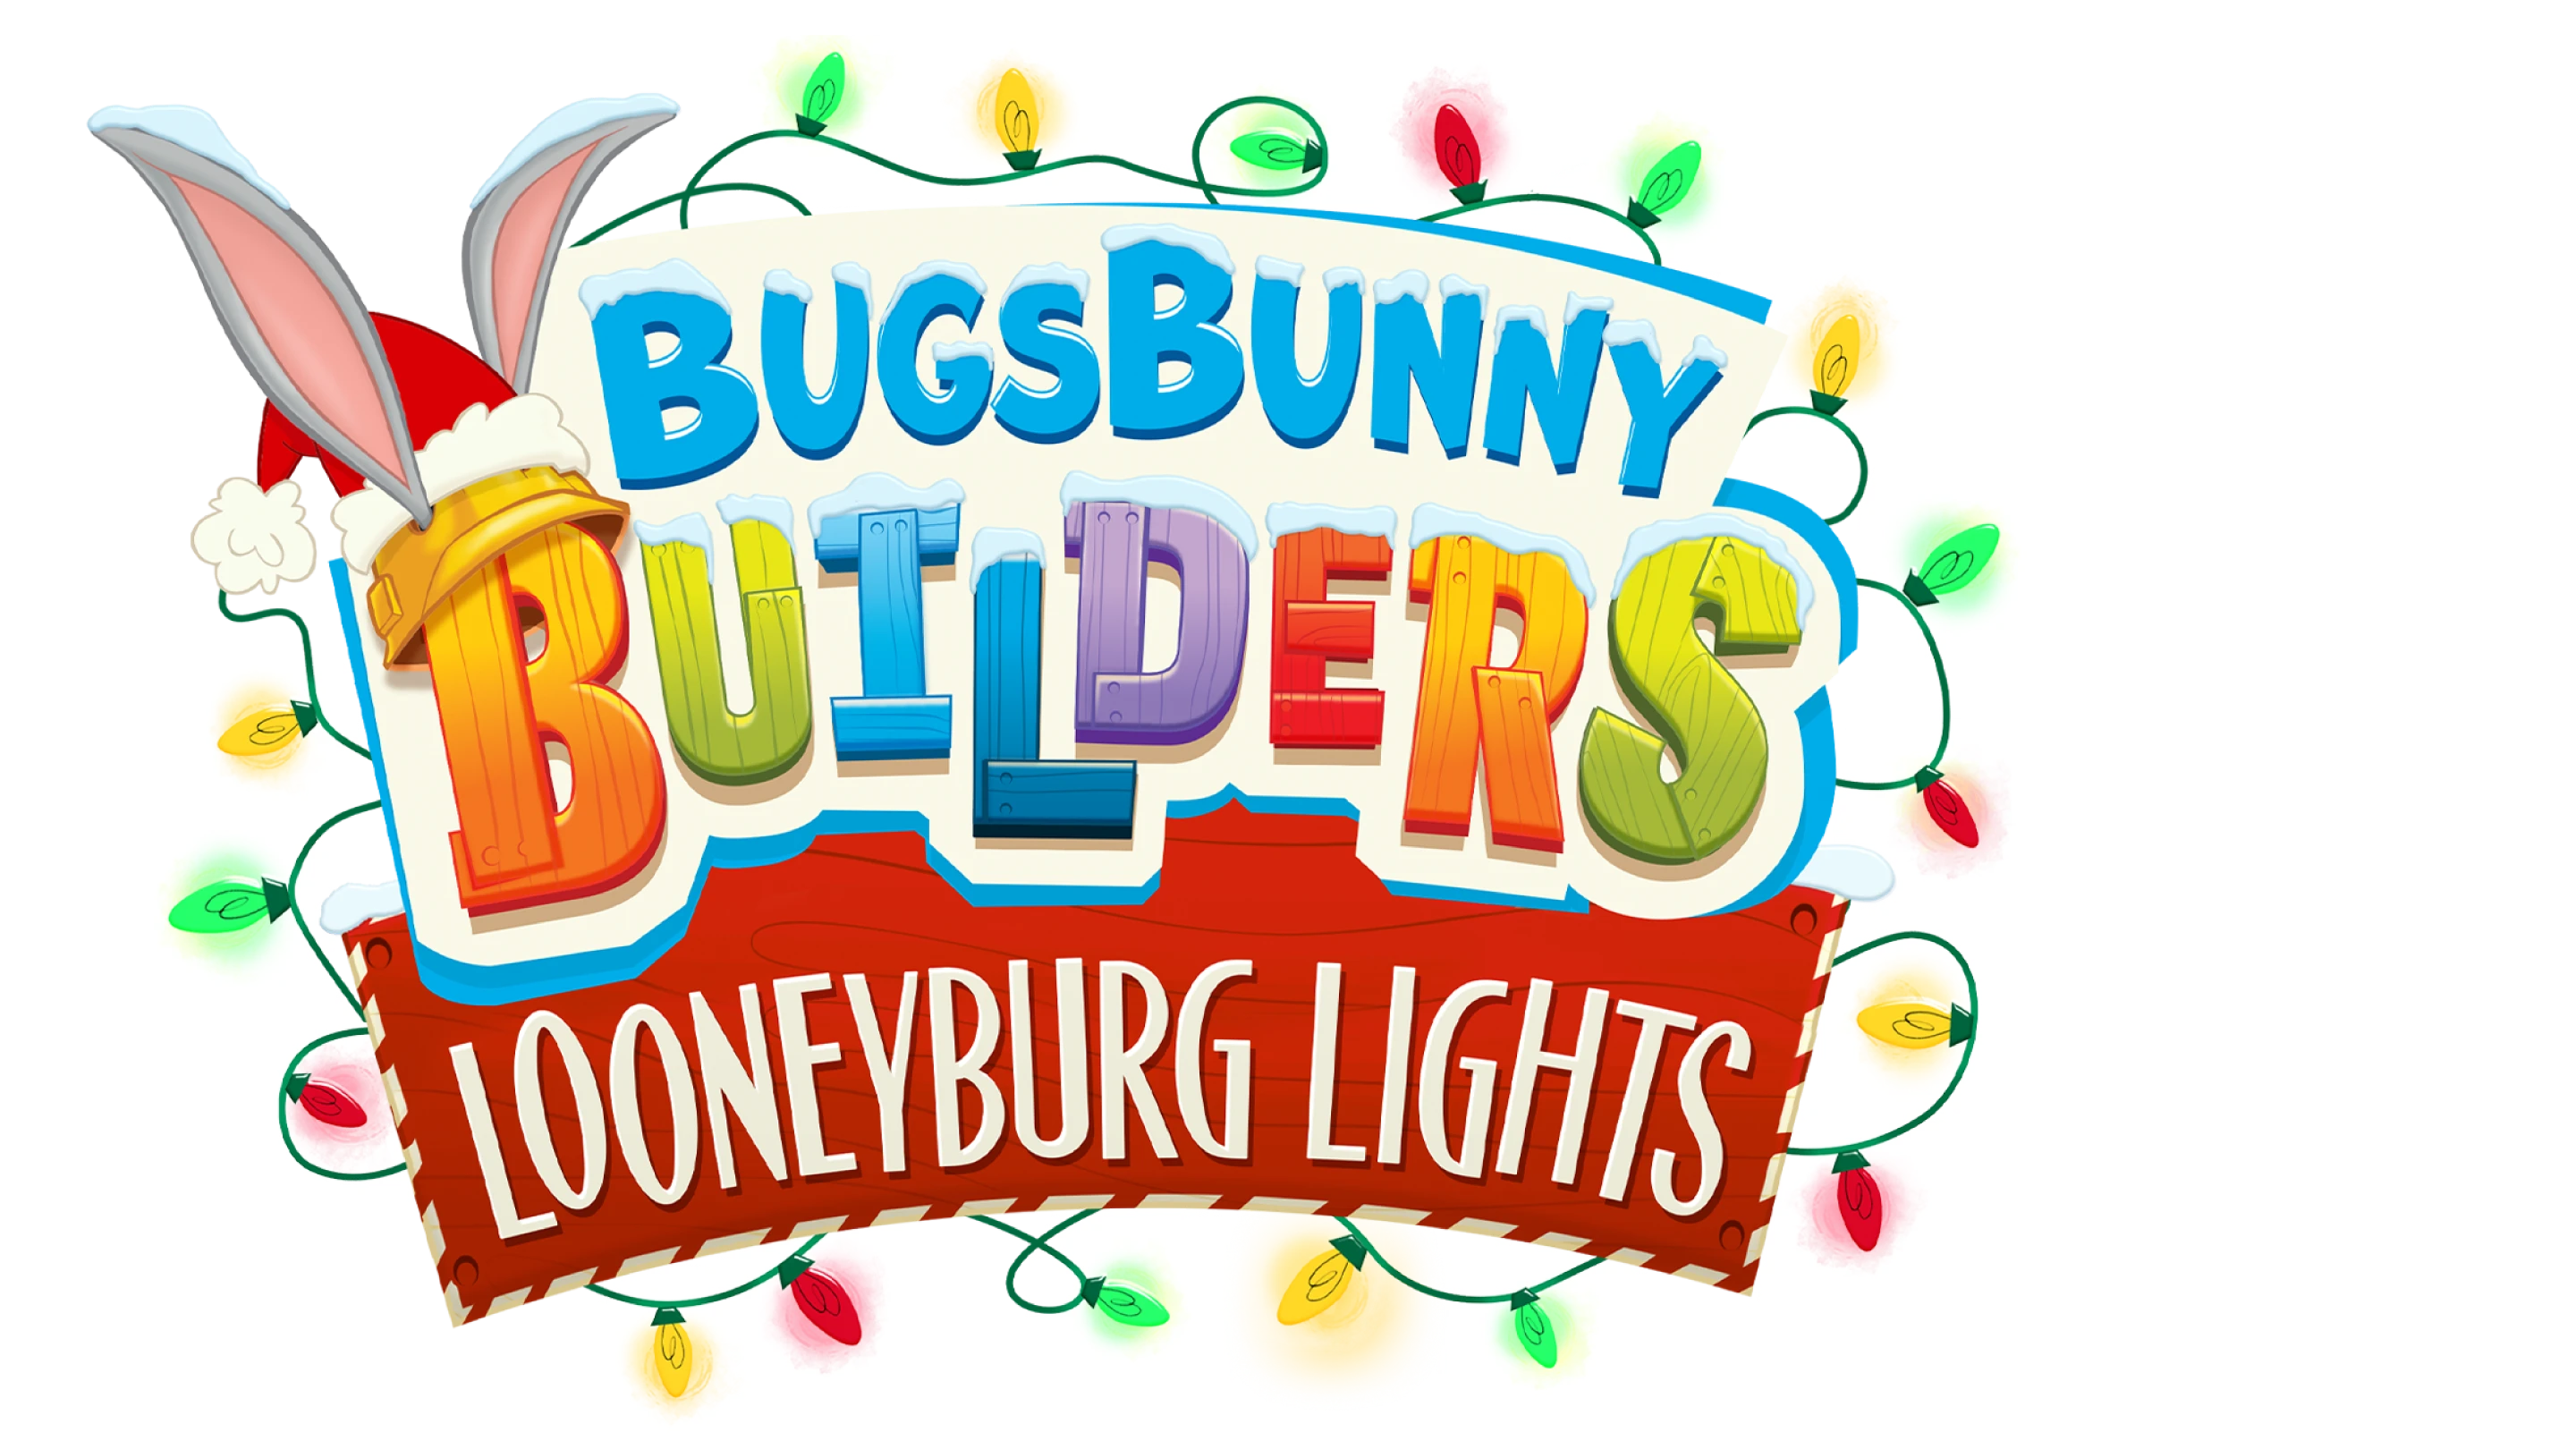 Bugs Bunny Costruzioni: il festival delle luci